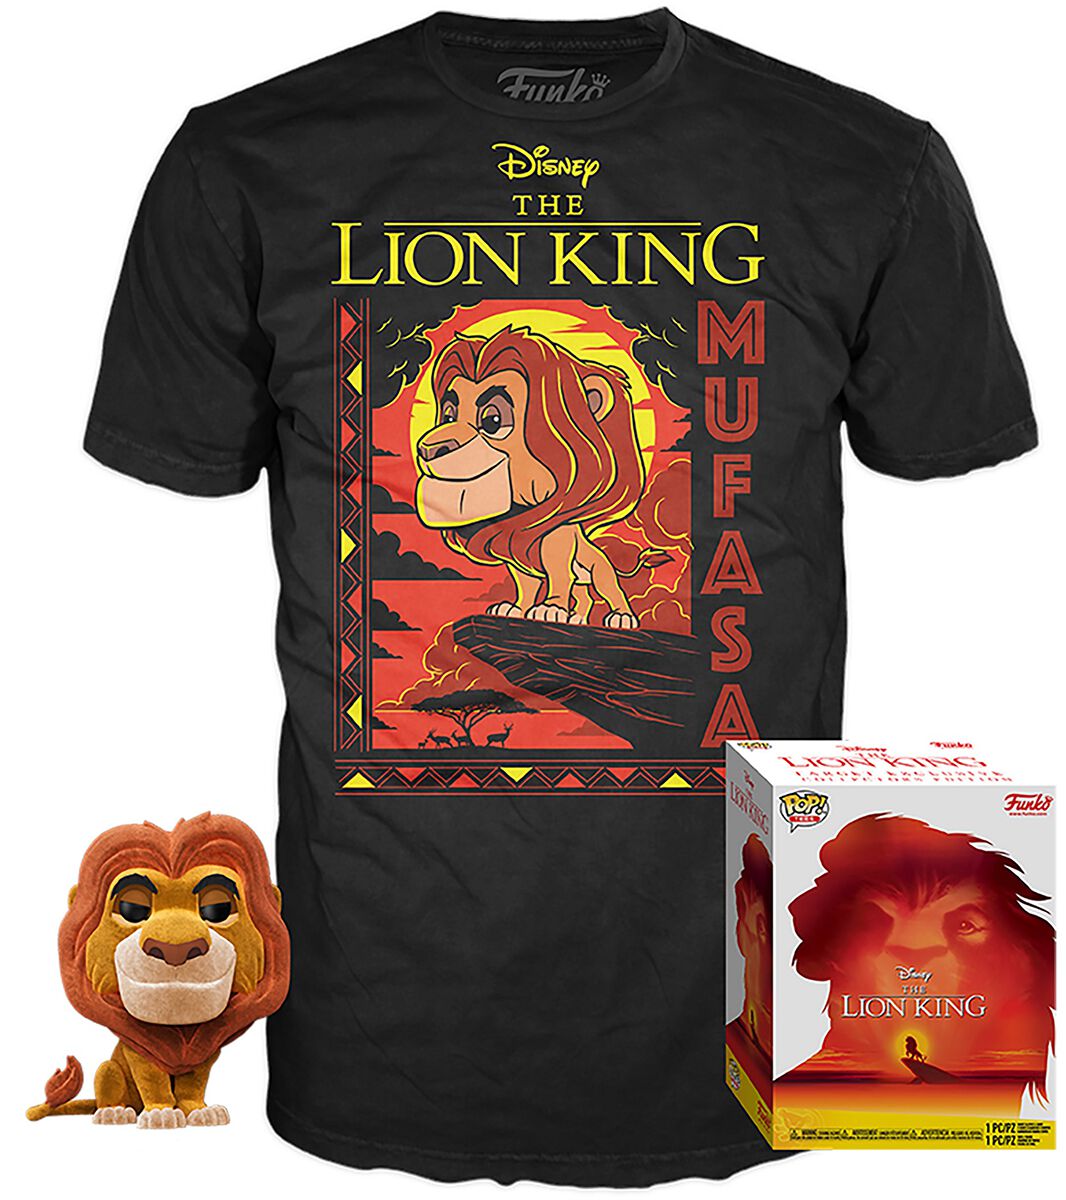 Mufasa (Flocked) T-Shirt plus Funko POP! & Tee Funko Pop! von Der König der Löwen